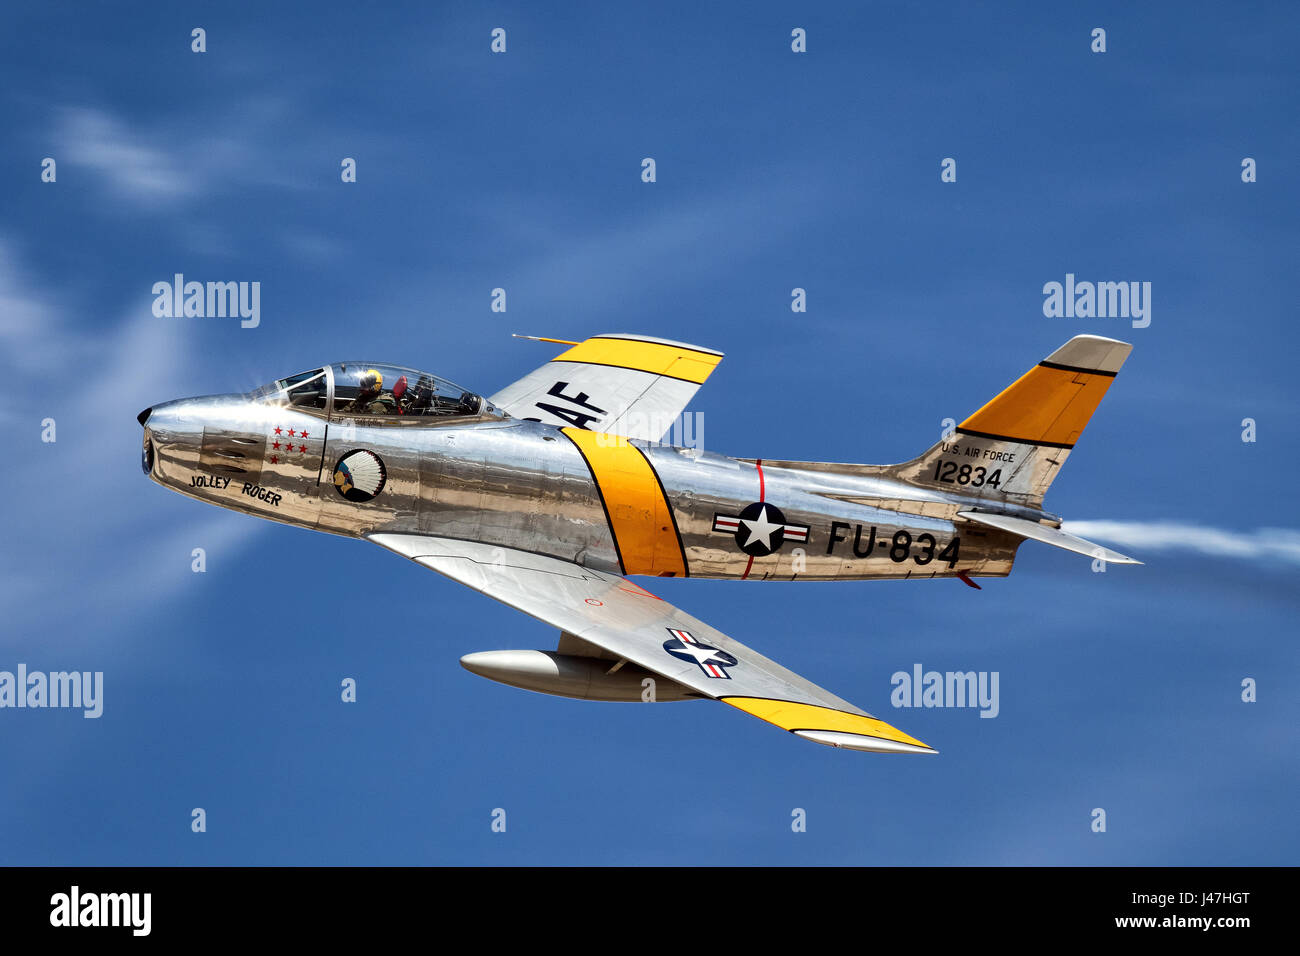 F-86F de la musée Planes of Fame à Chino, CA fonctionne à l'A.L. Spectacle aérien dans le comté de Lancaster, CA en mars 2017 Banque D'Images